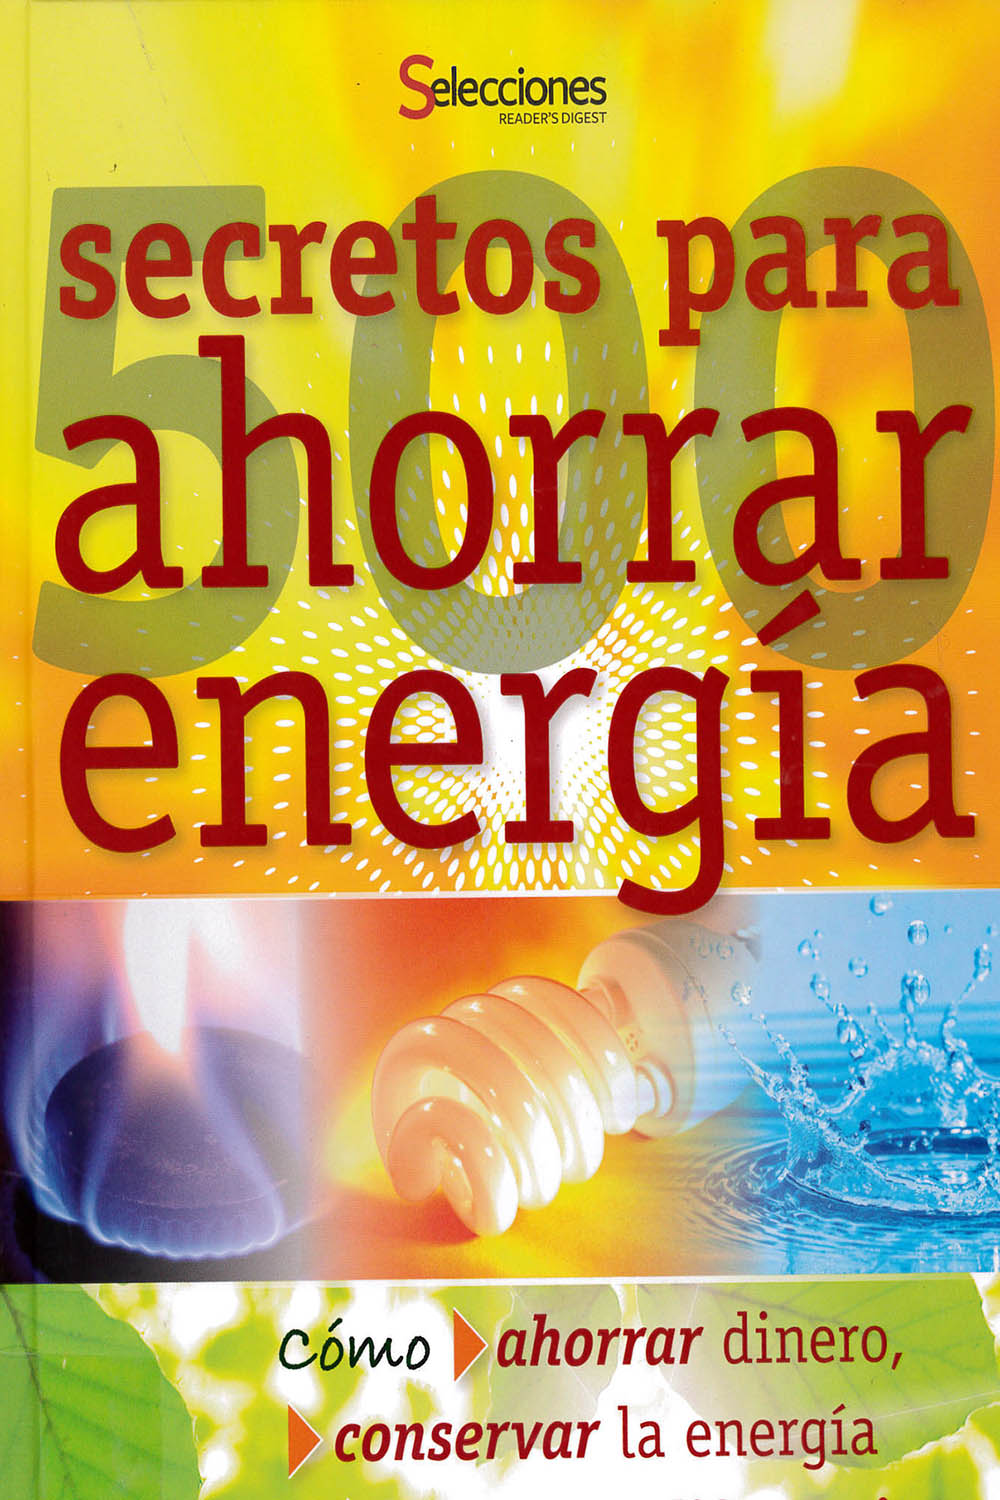 18 / 26 - TH6012 R52 500 secretos para ahorrar energía - Selecciones, Buenos Aires 2012